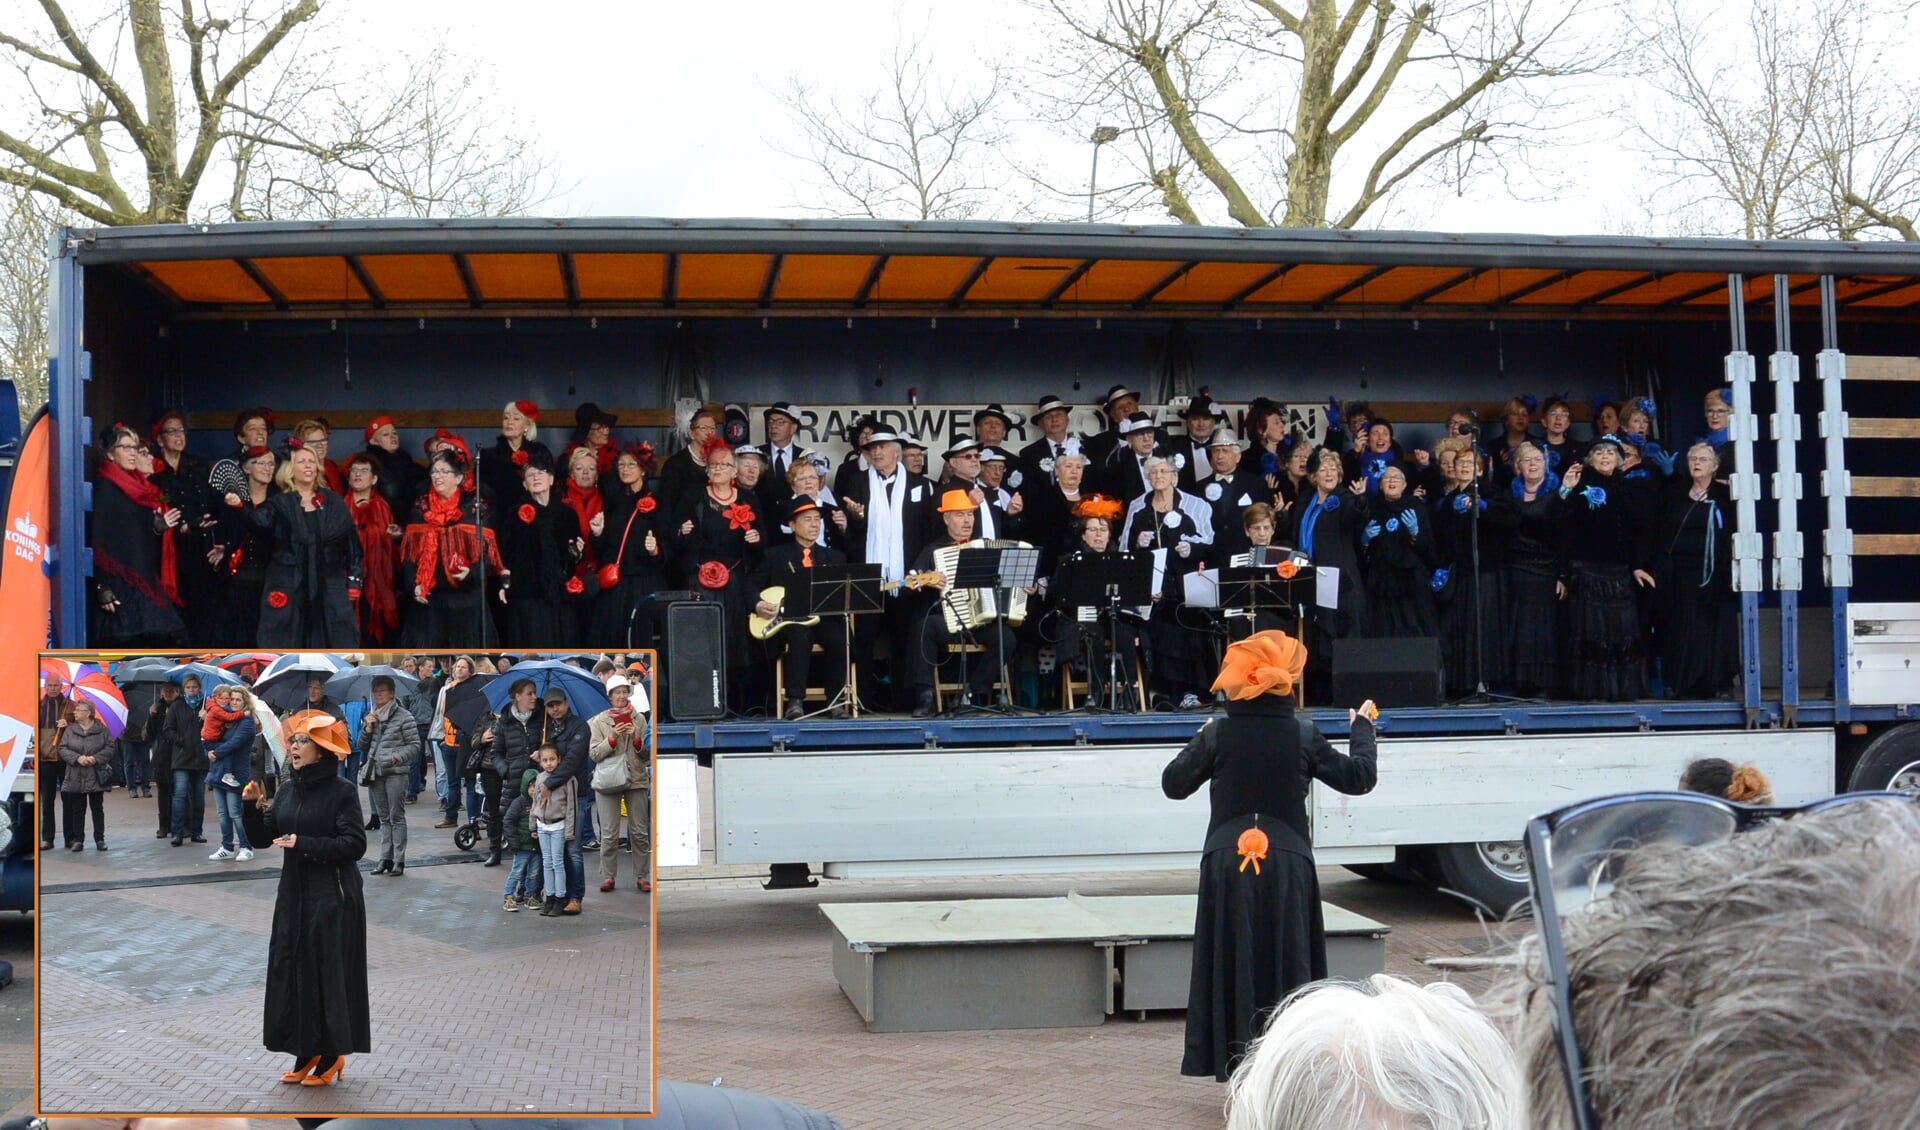 Het koor tijdens het optreden in 2016 tijdens Koningsdag.